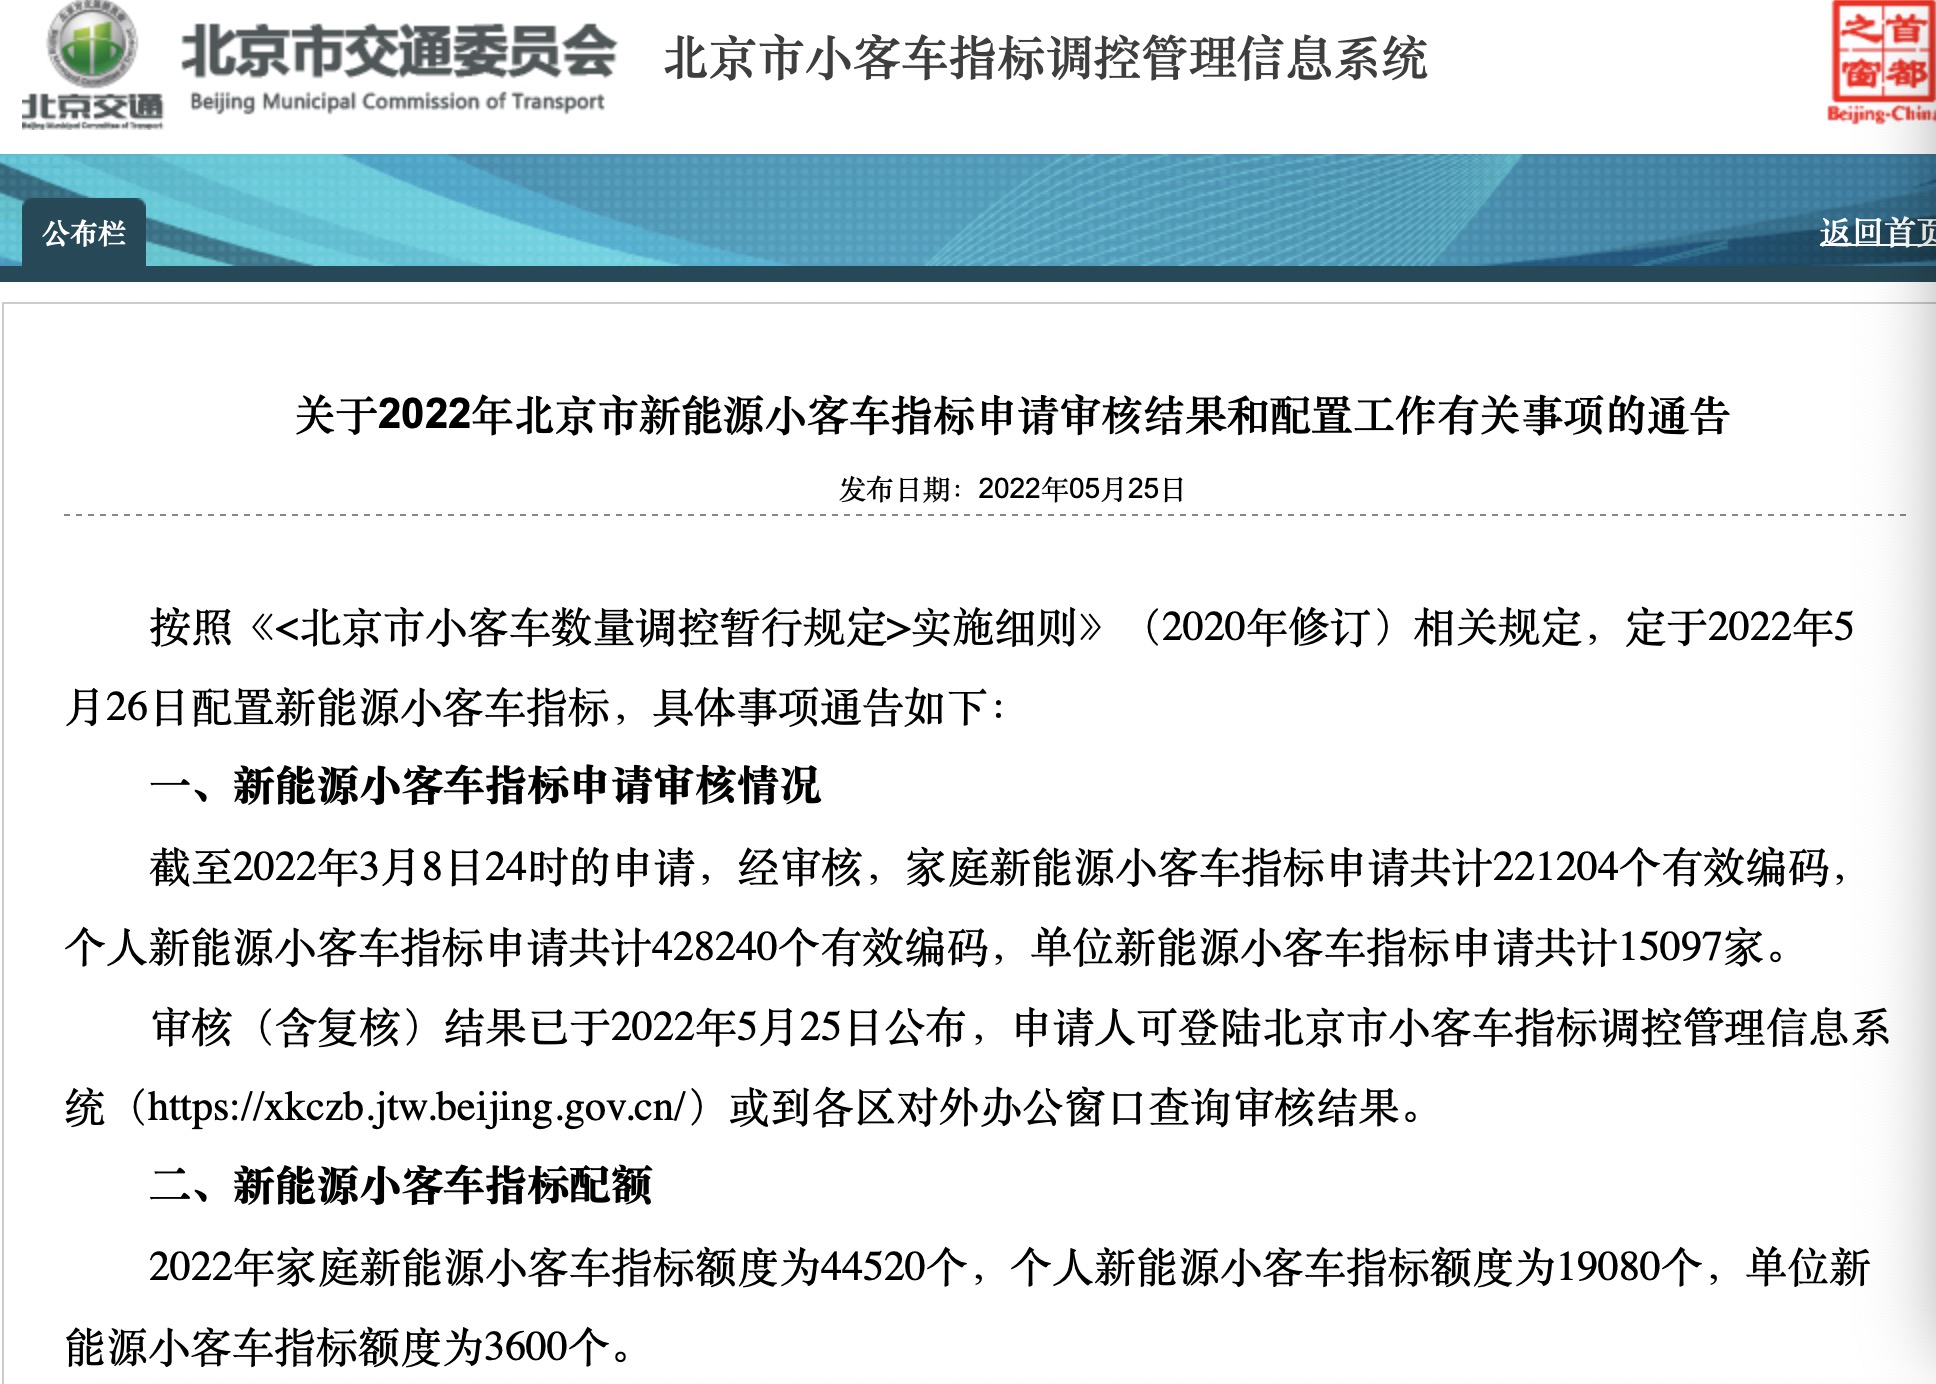 来源:北京市小客车指标调控管理信息系统网站截图